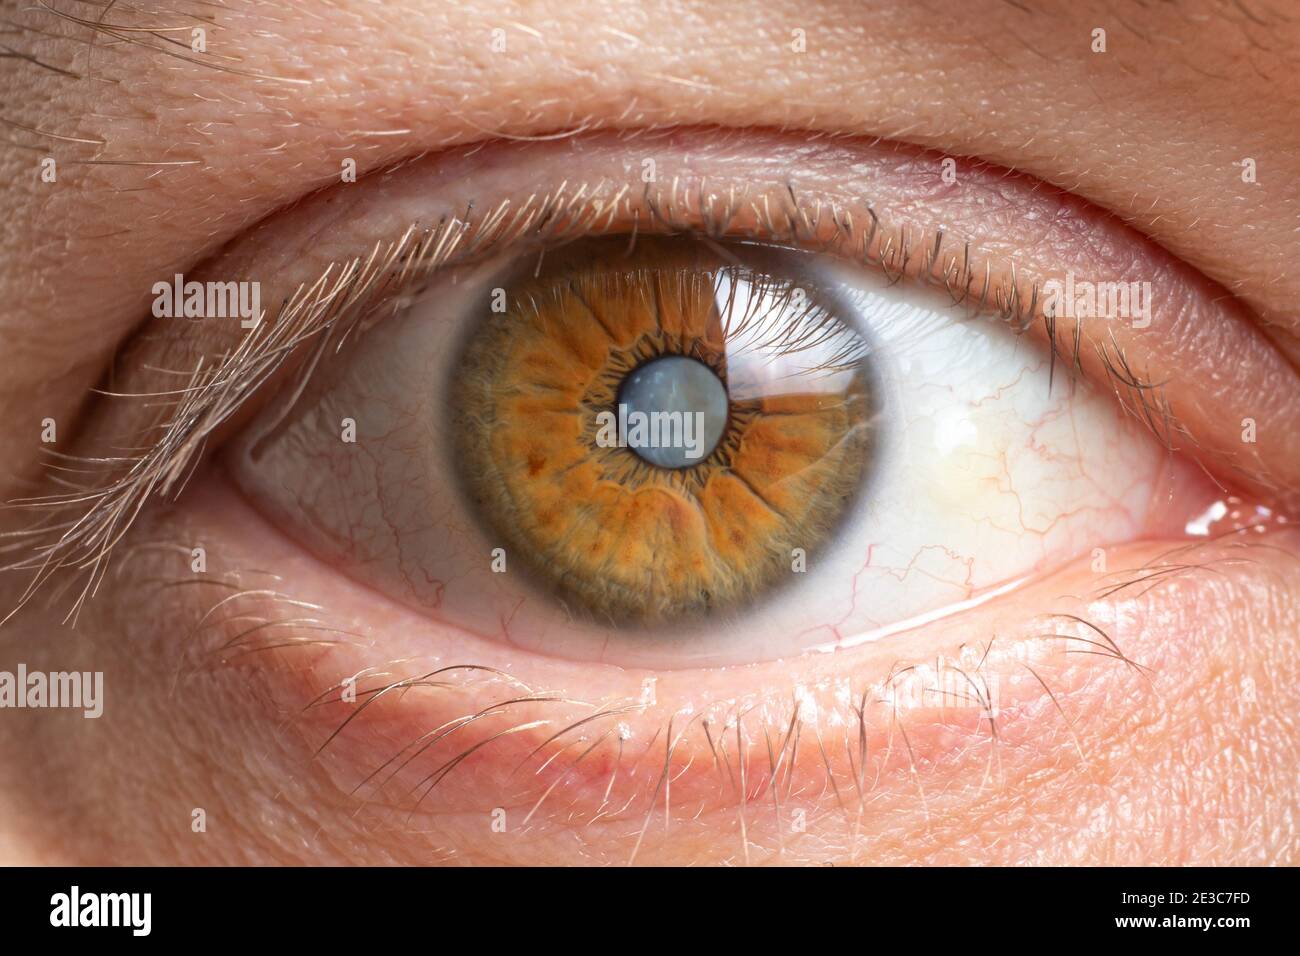 Macro photos de l'œil humain - cataracte assombrissement de la lentille, détérioration de la vision. Traitement de la cataracte, chirurgie et ophtalmologie Banque D'Images